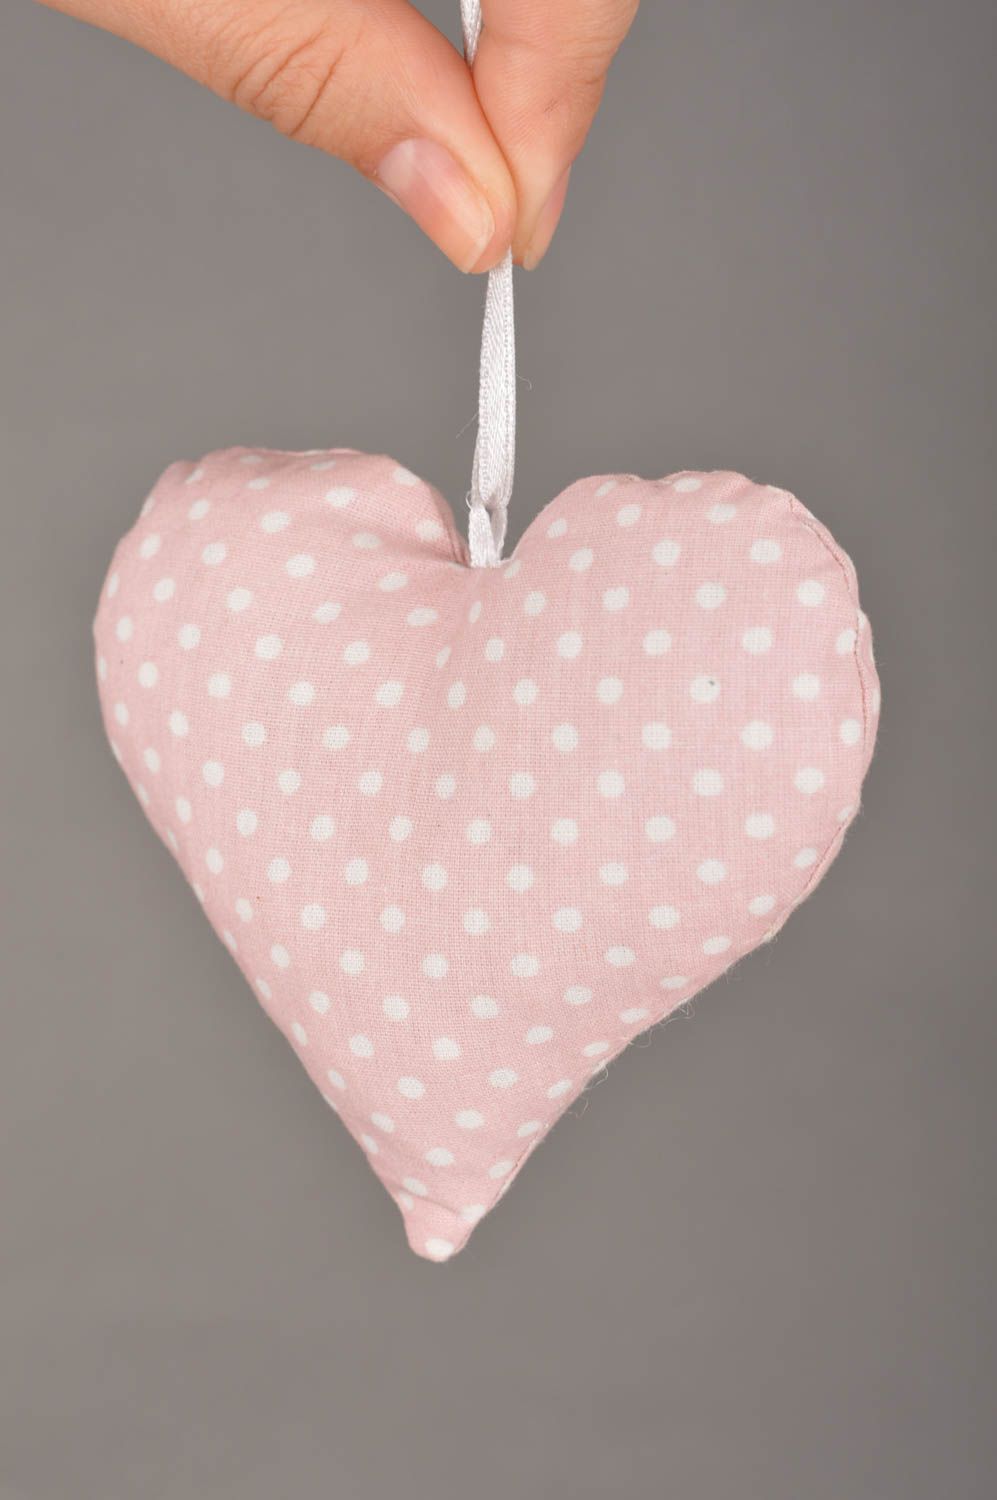 Интерьерная подвеска сердце розовое в горошек из хлопка красивая ручной работы фото 3